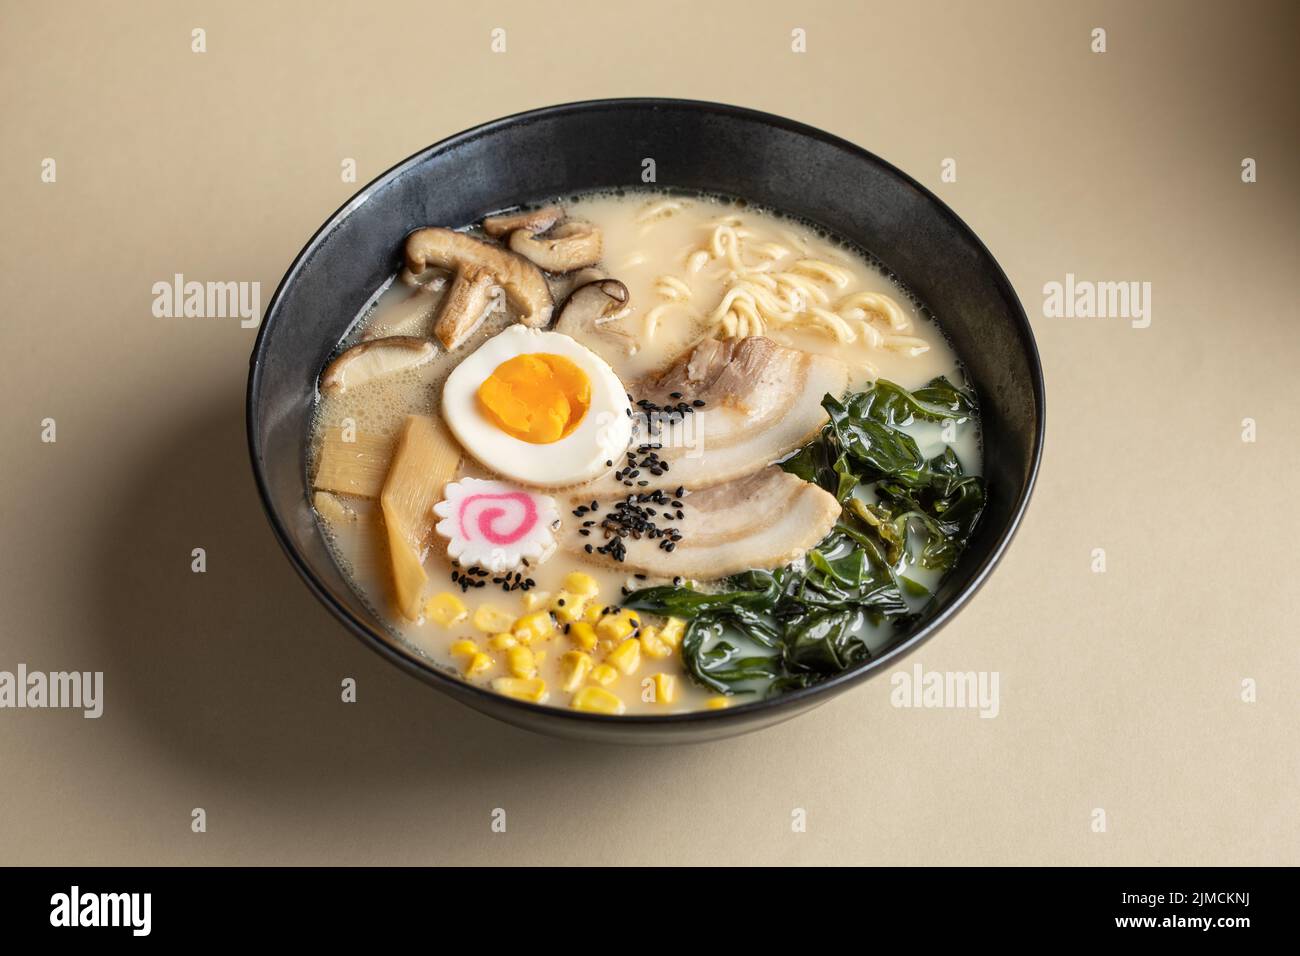 Desde arriba de apetitoso ramen japonés con huevo hervido y champiñones servidos en un bol sobre fondo beige Foto de stock